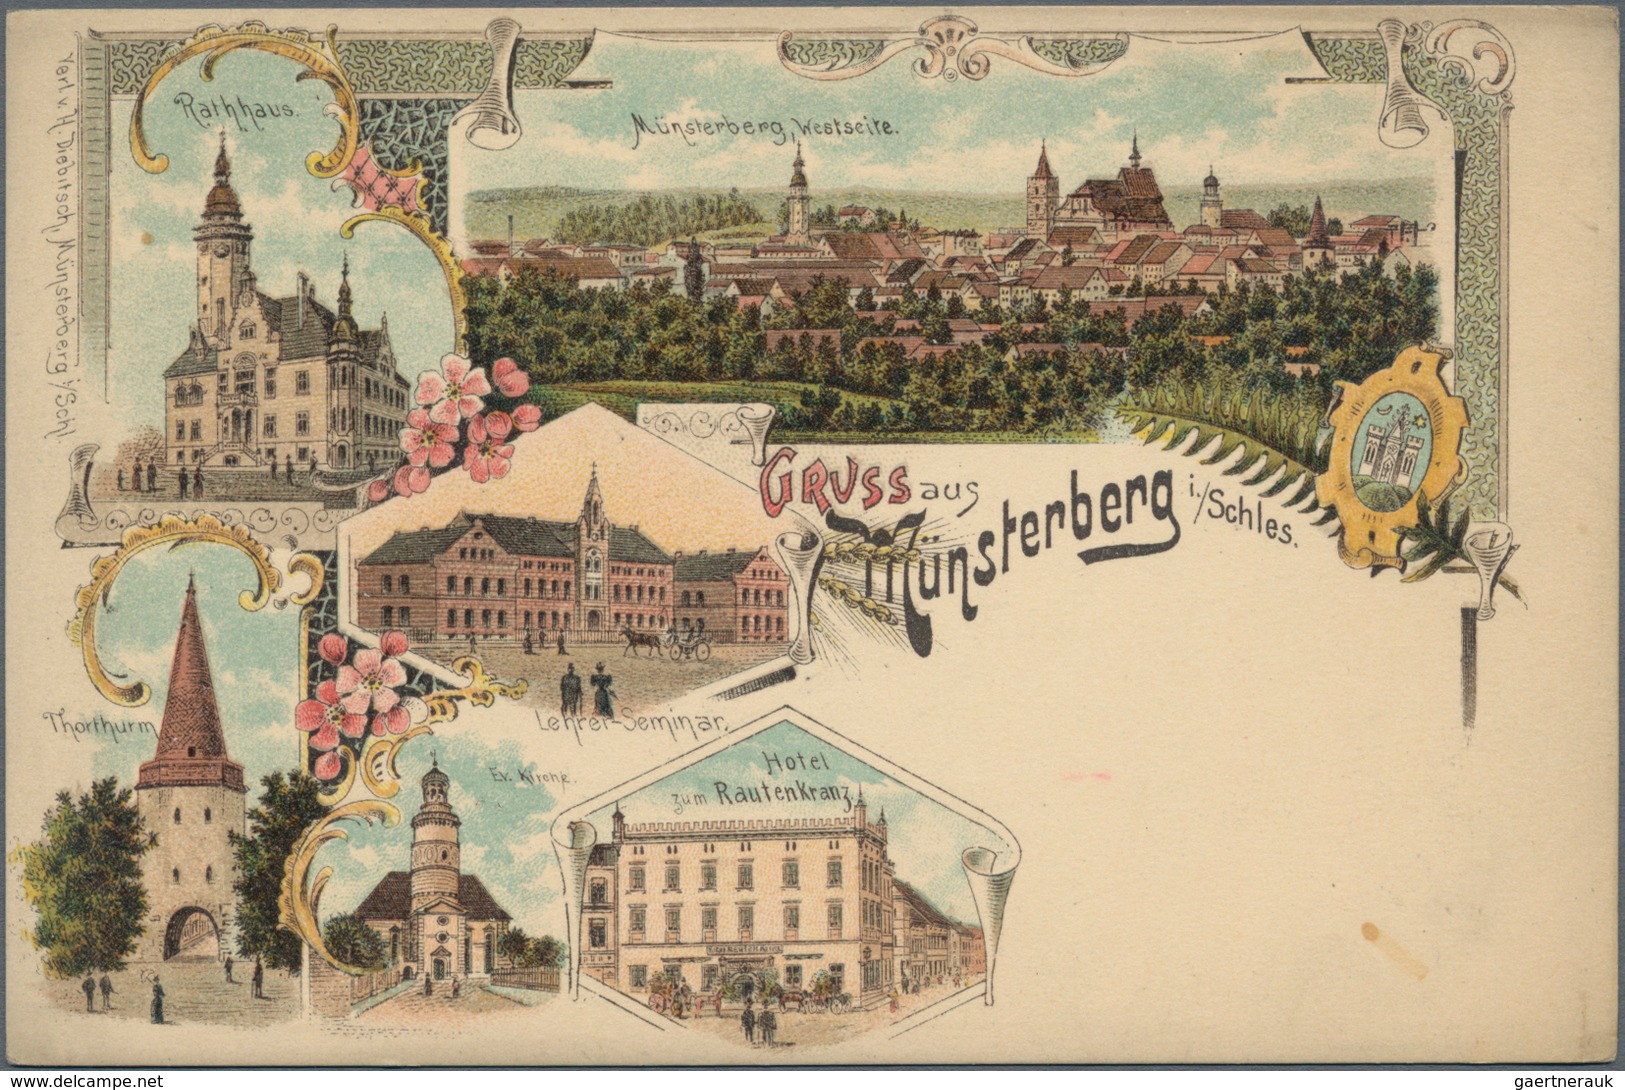 Ansichtskarten: Deutschland: 1892/1940 (ca.), saubere und vielseitige Partie von ca. 203 Topografie-